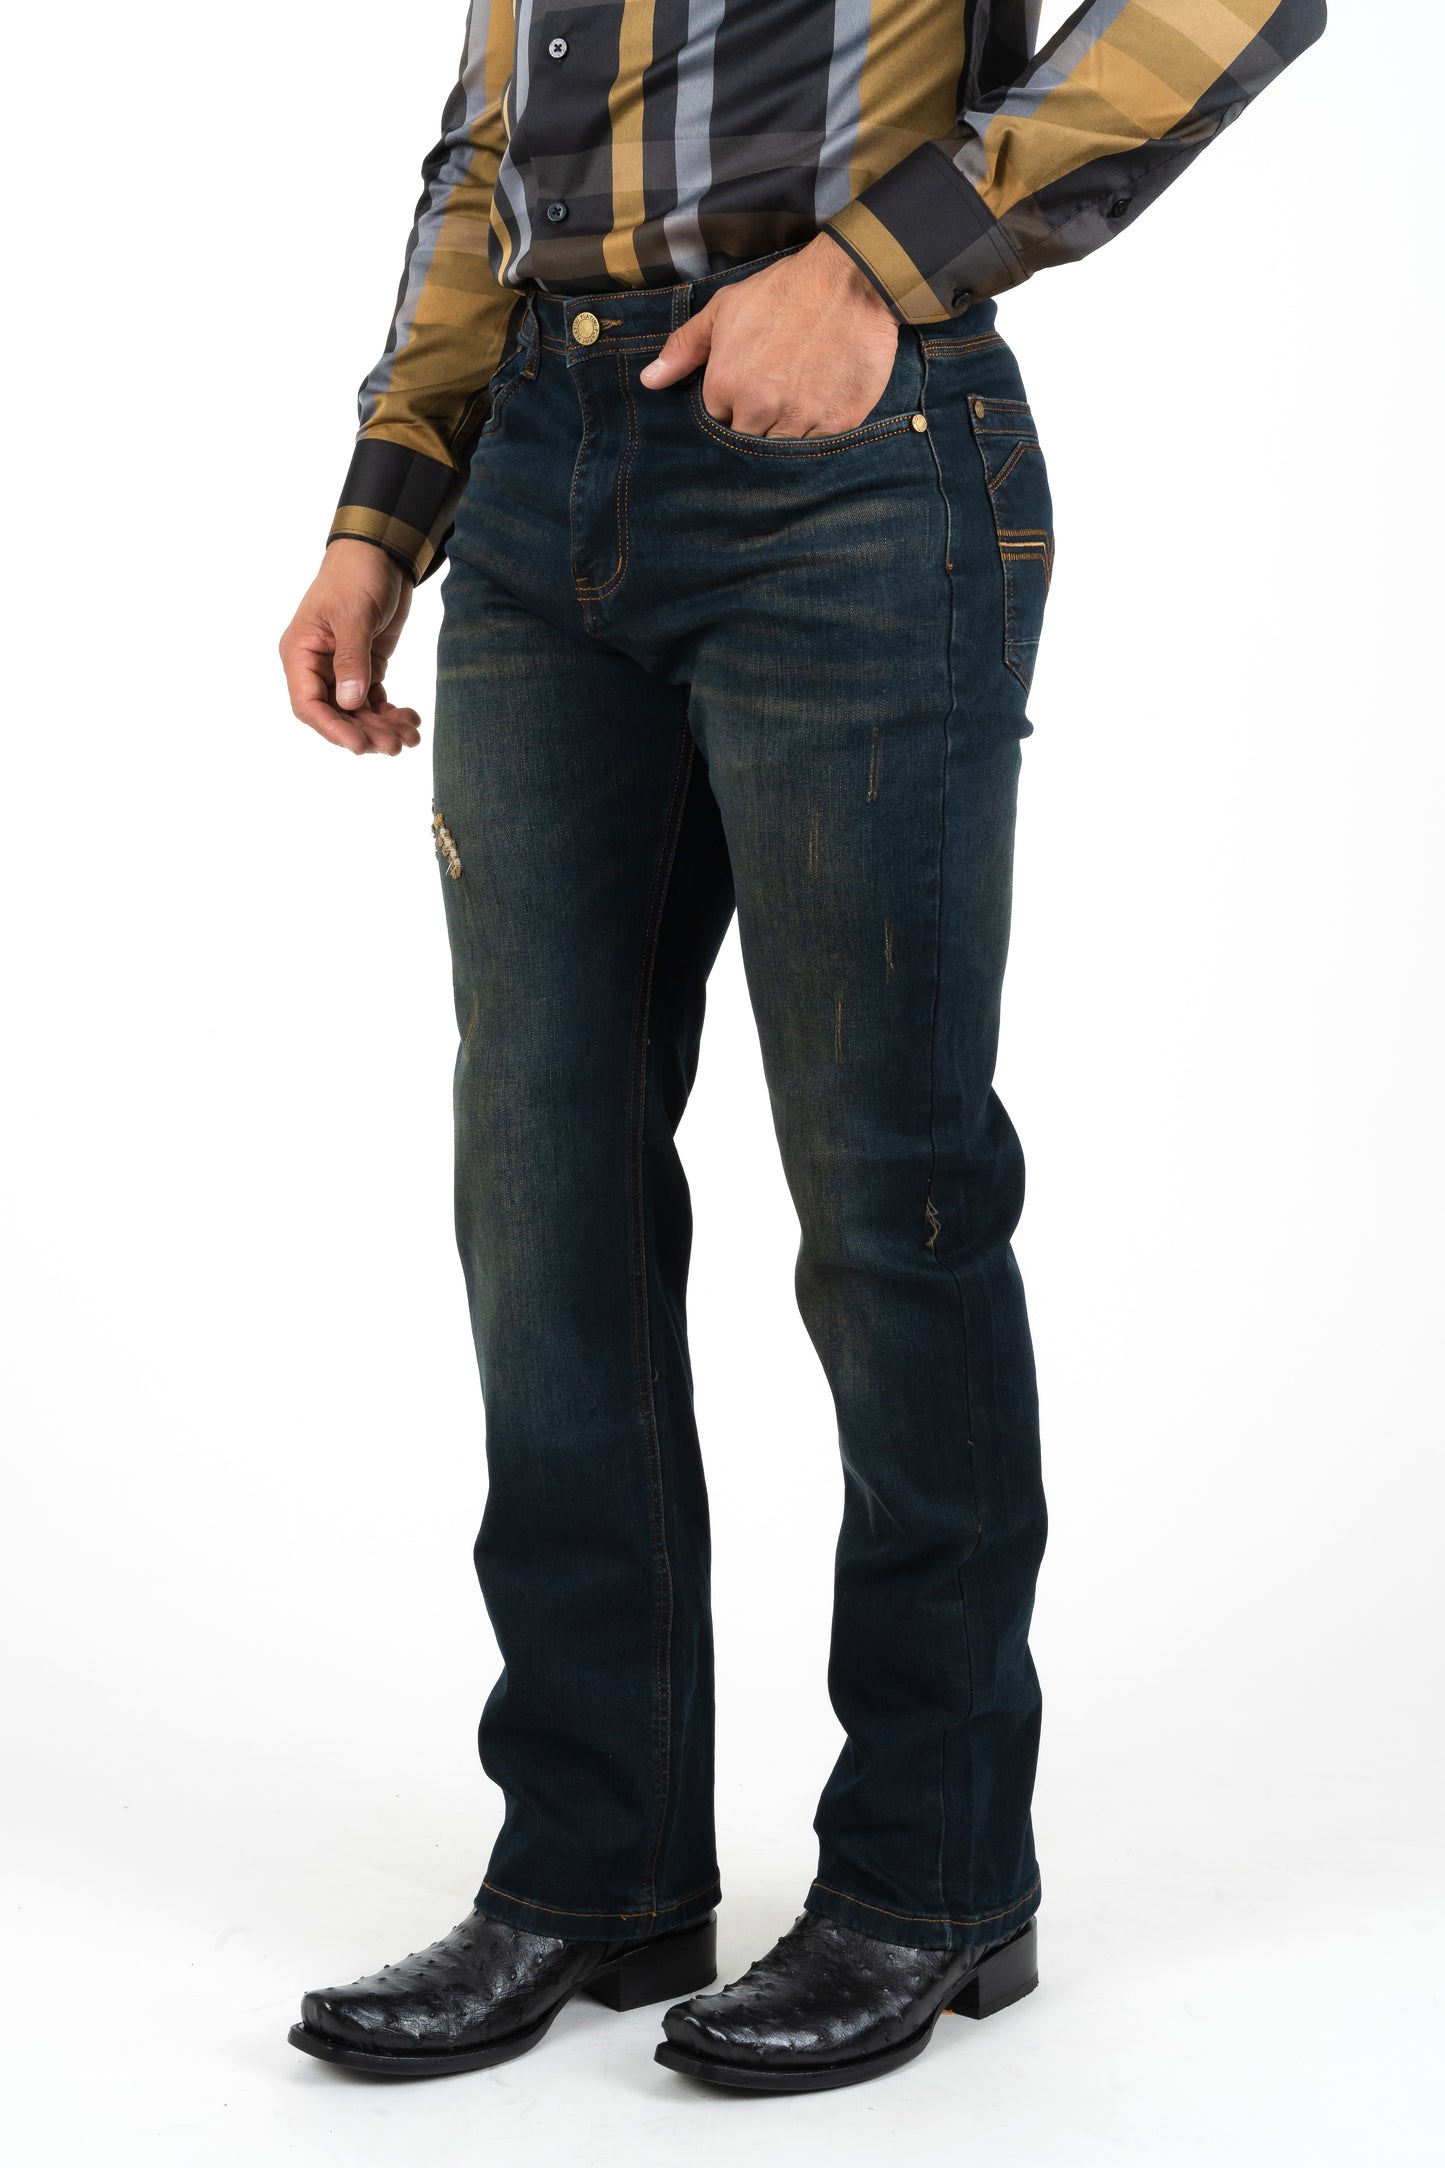 Holt Men's Boot Cut Jeans